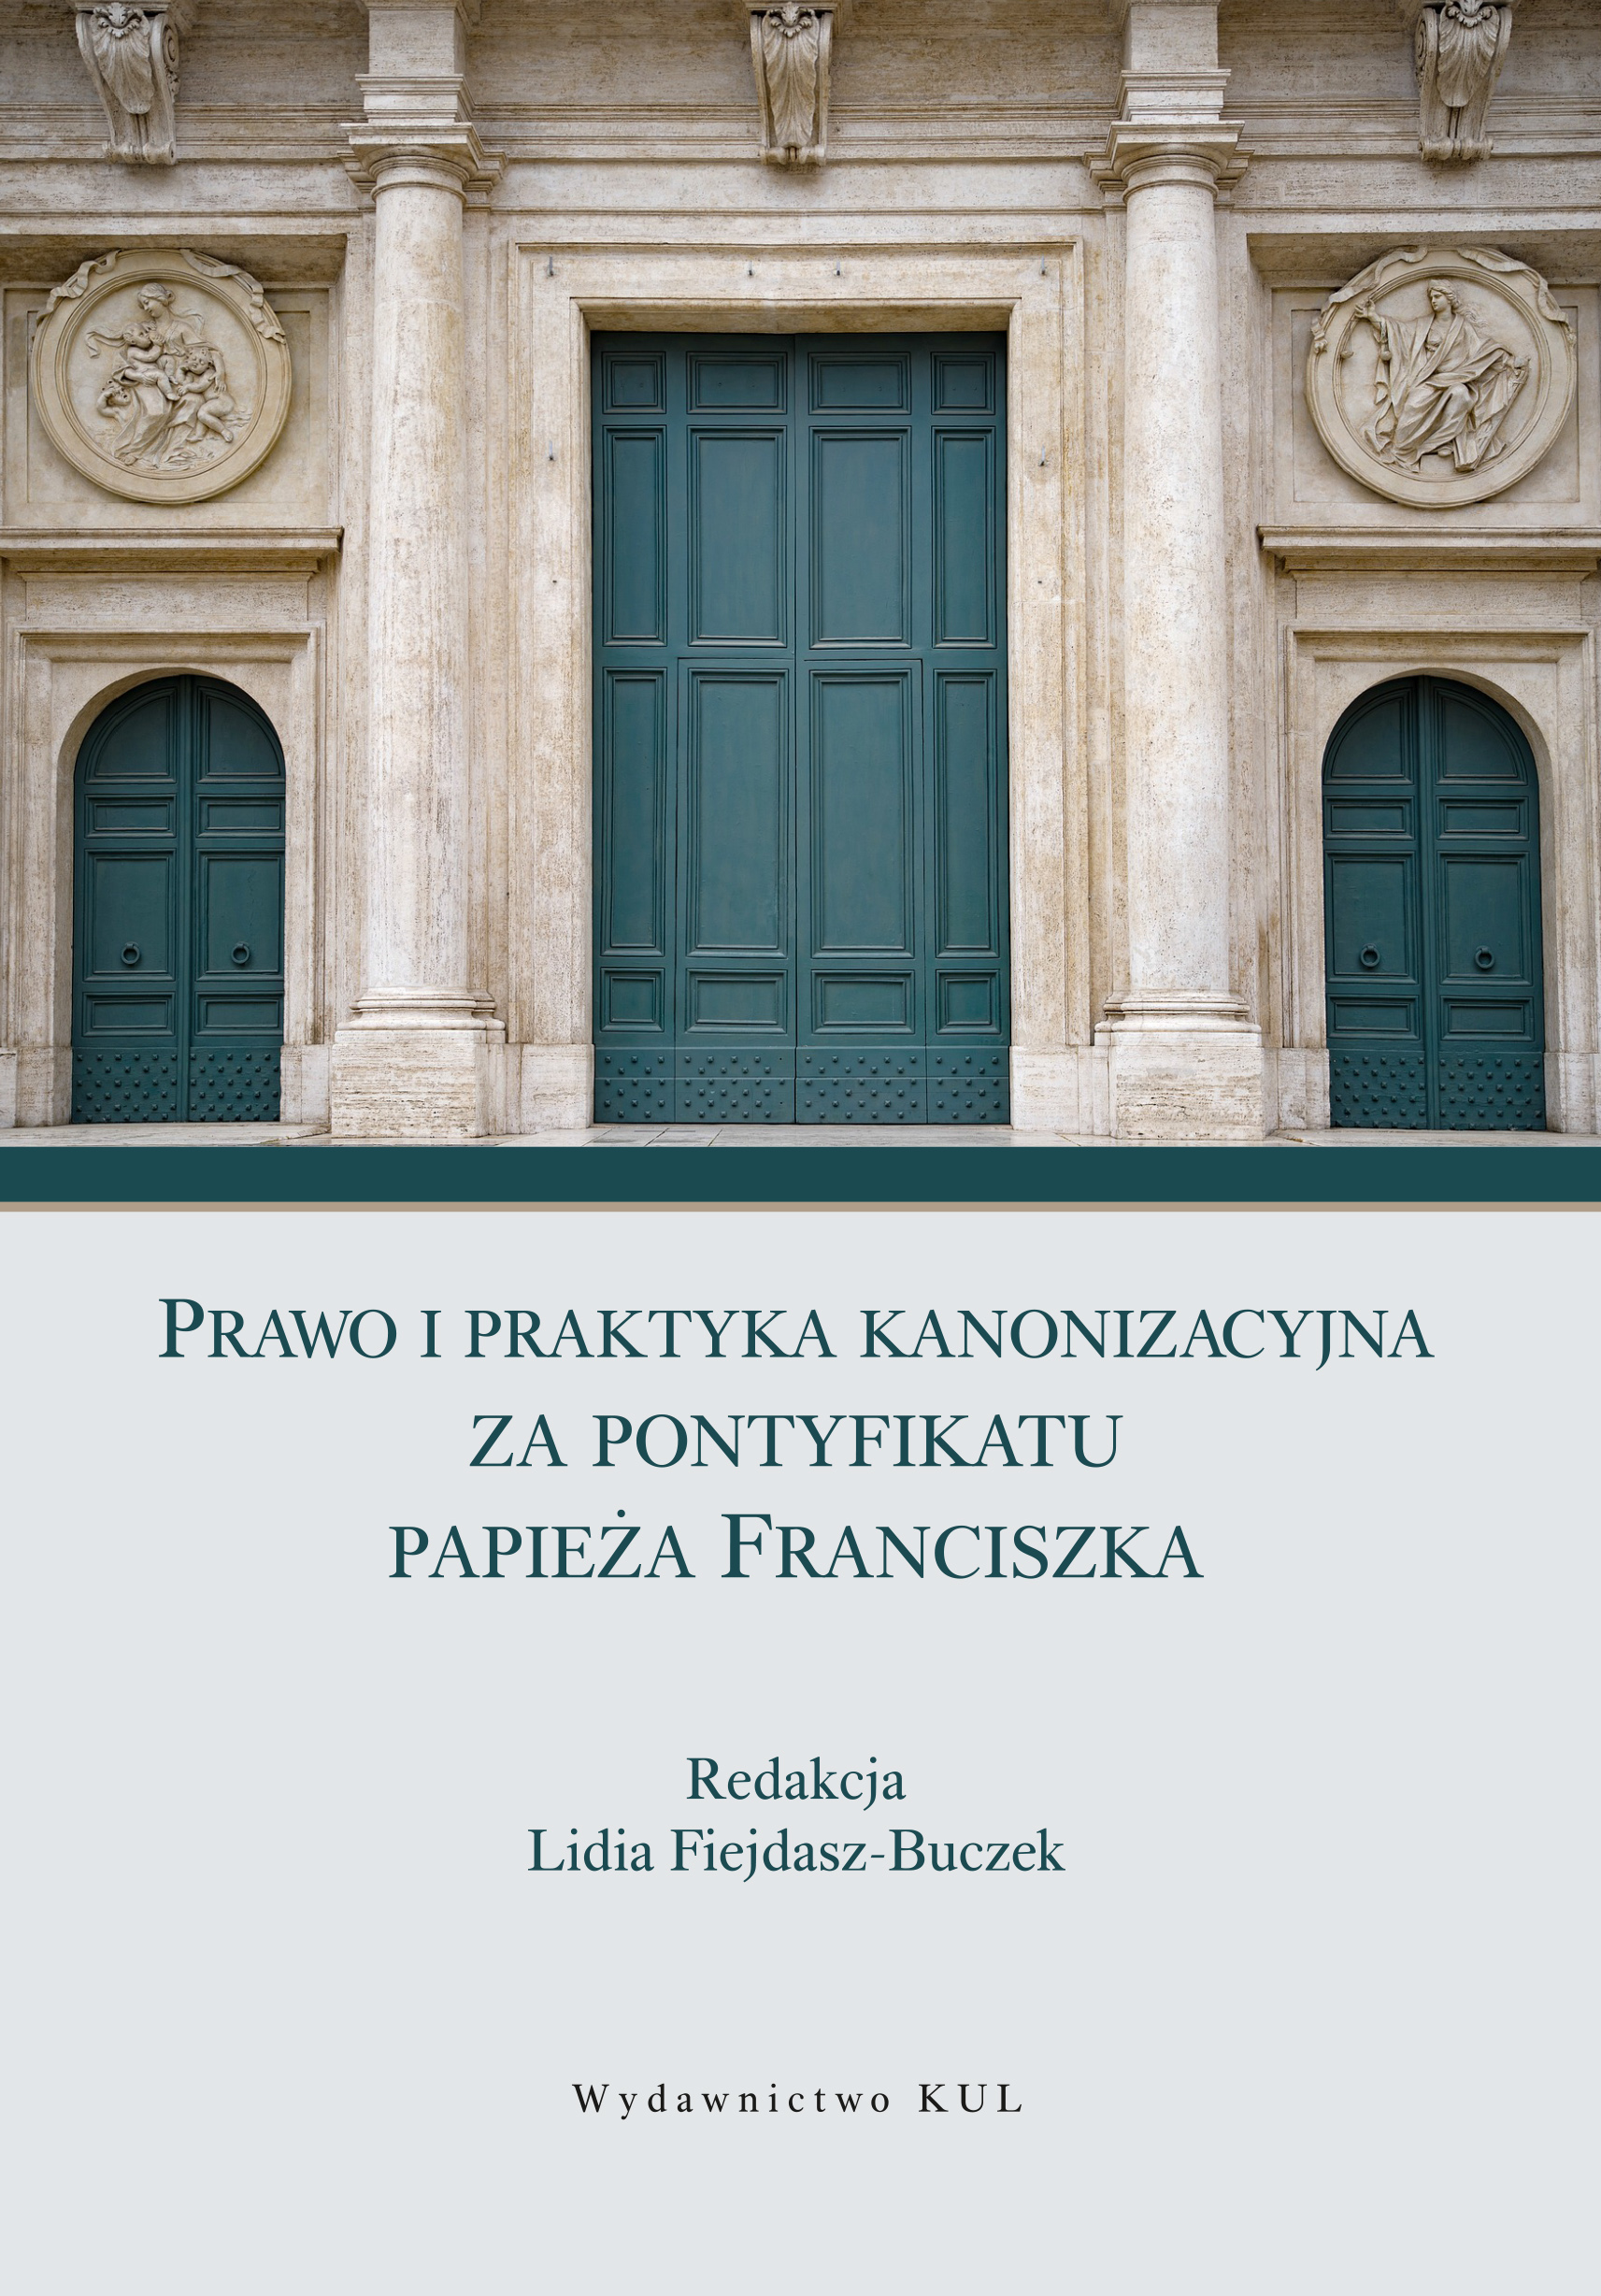 Prawo i praktyka kanonizacyjna za pontyfikatu papieża Franciszka